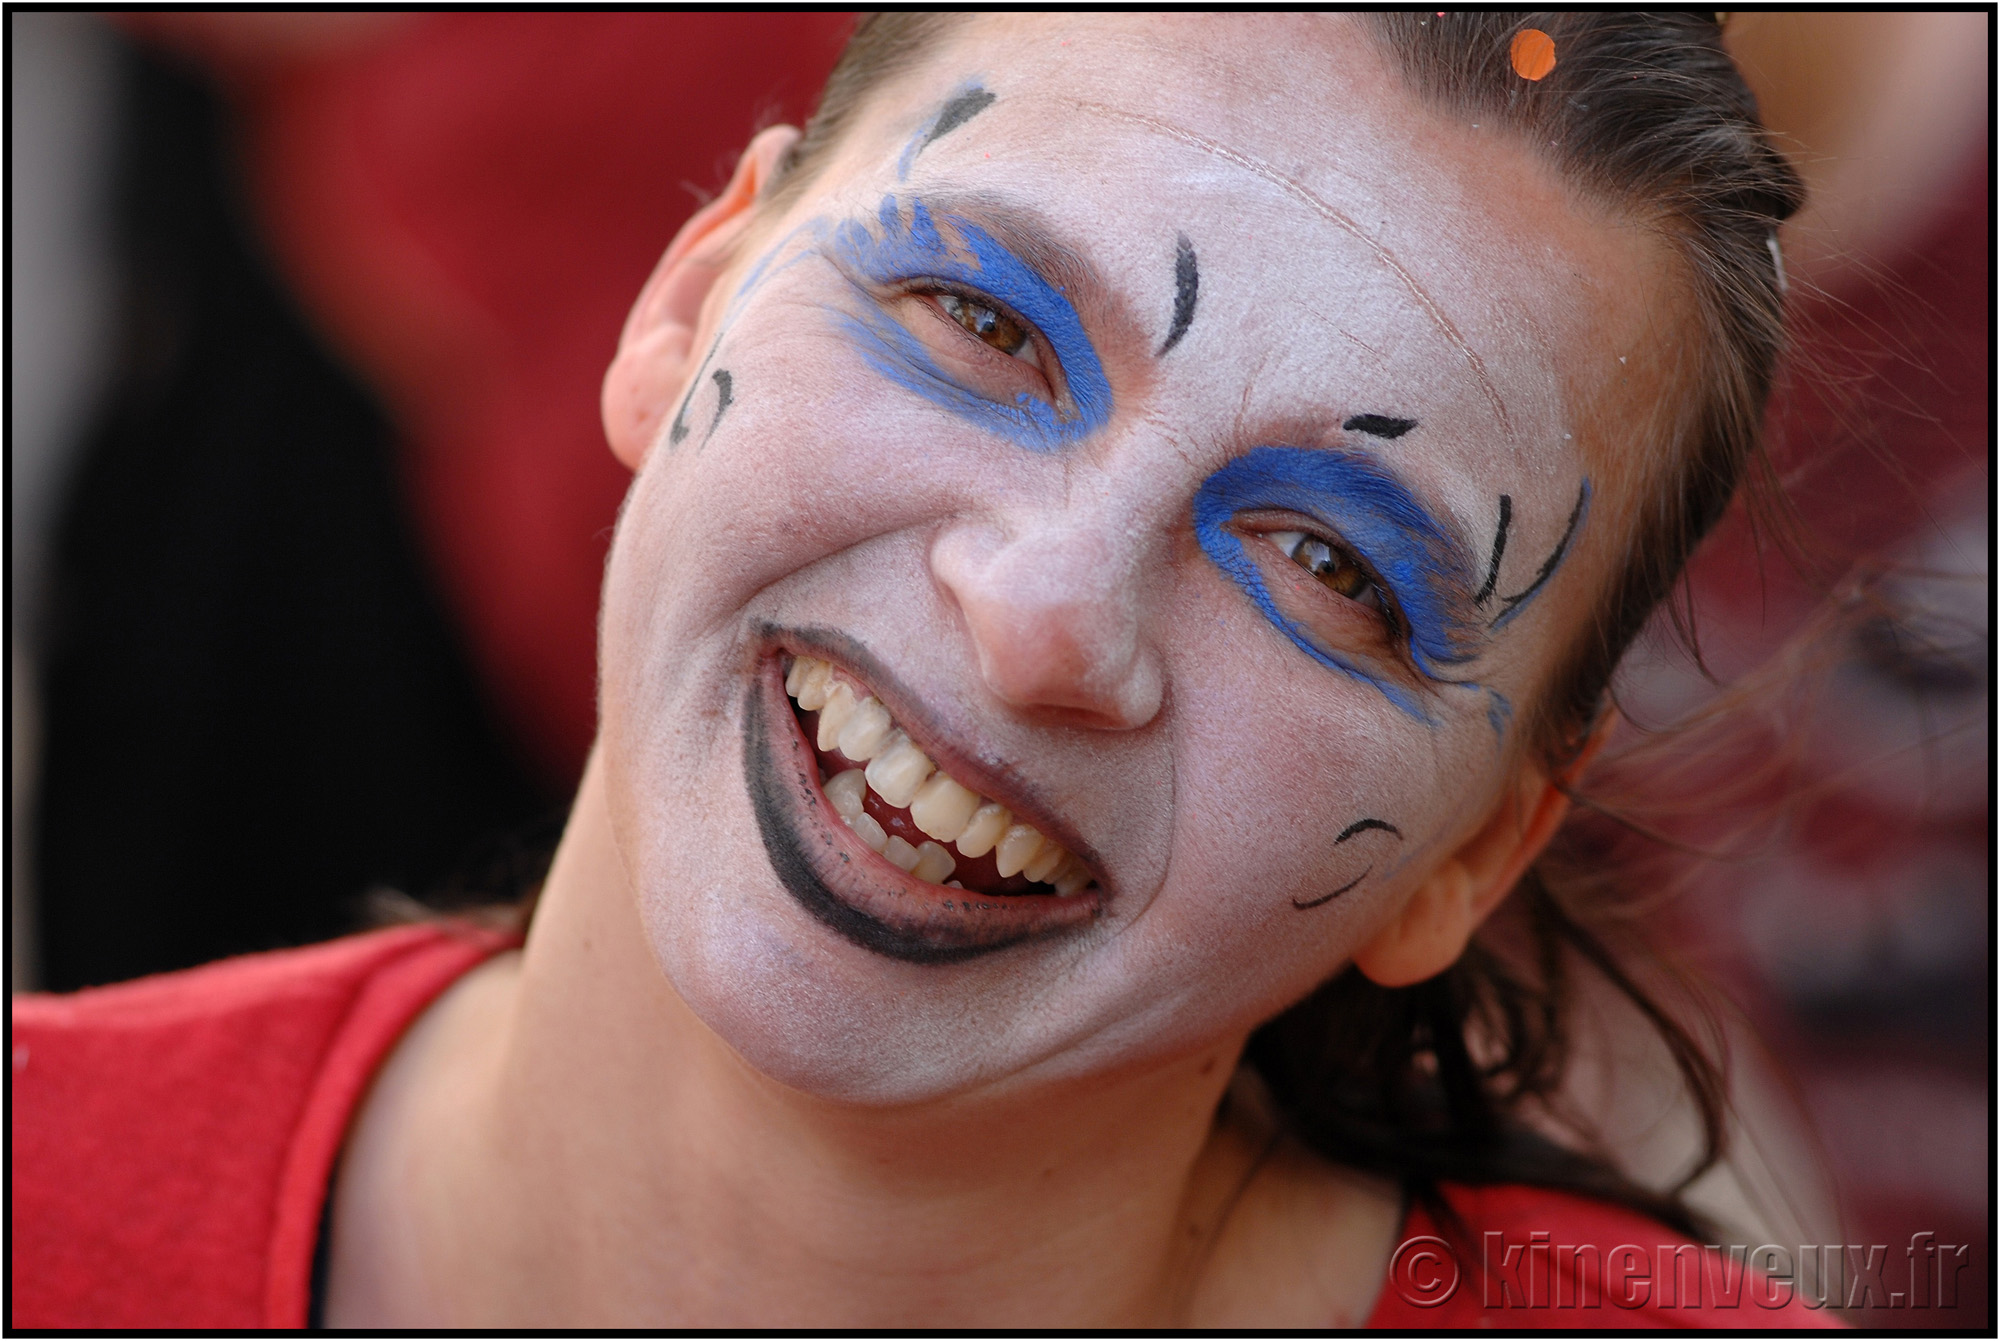 kinenveux_59_carnaval2015lr.jpg - Carnaval des Enfants 2015 - La Rochelle